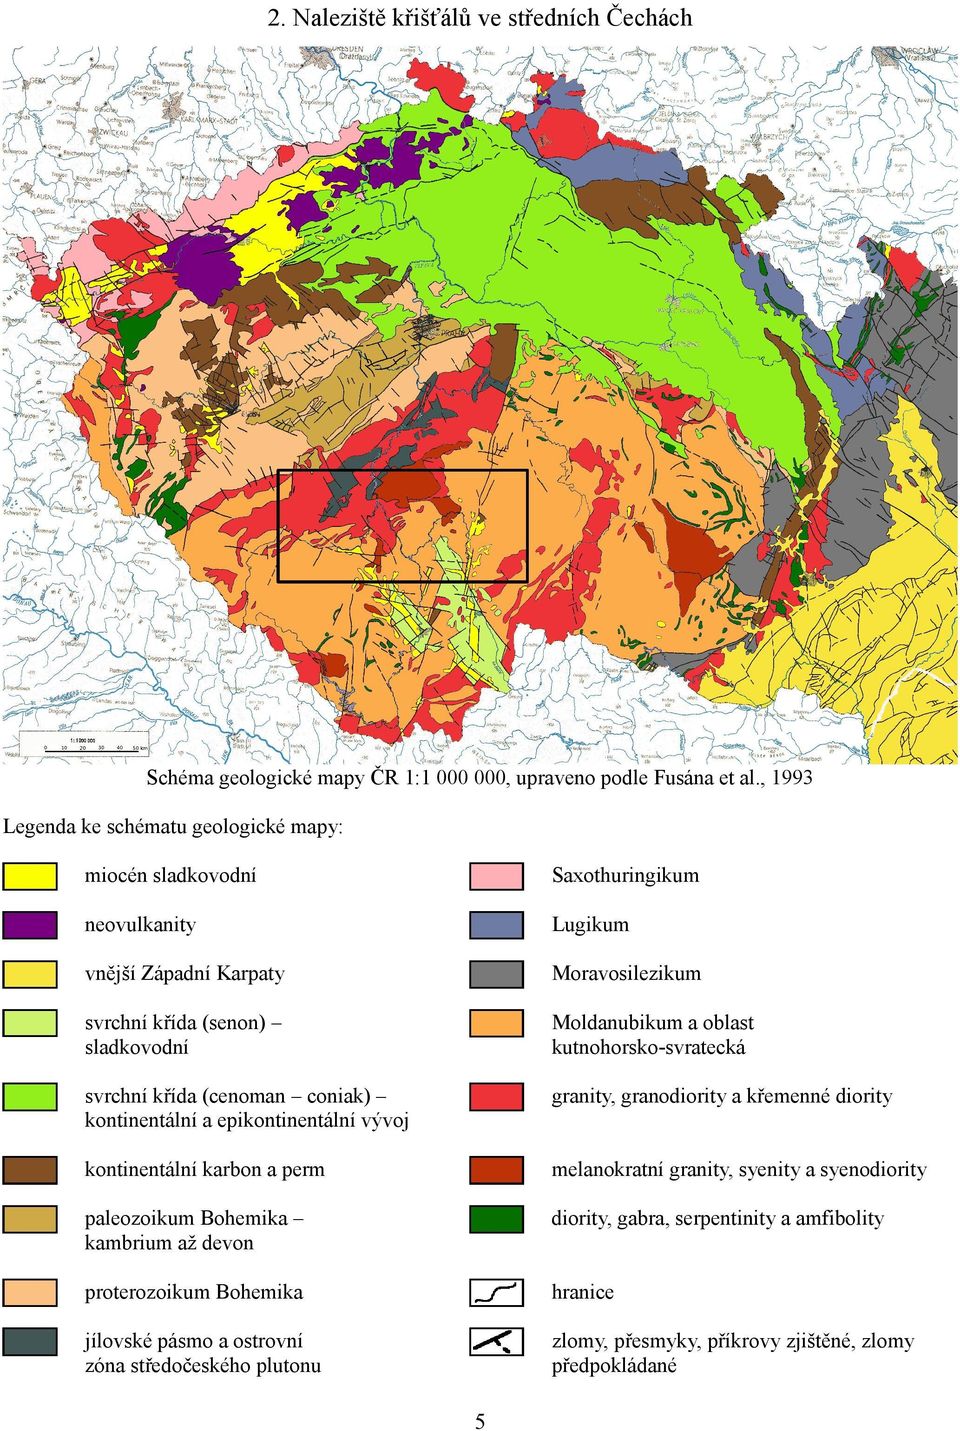 Moldanubikum a oblast kutnohorsko-svratecká svrchní křída (cenoman coniak) kontinentální a epikontinentální vývoj granity, granodiority a křemenné diority kontinentální karbon a perm